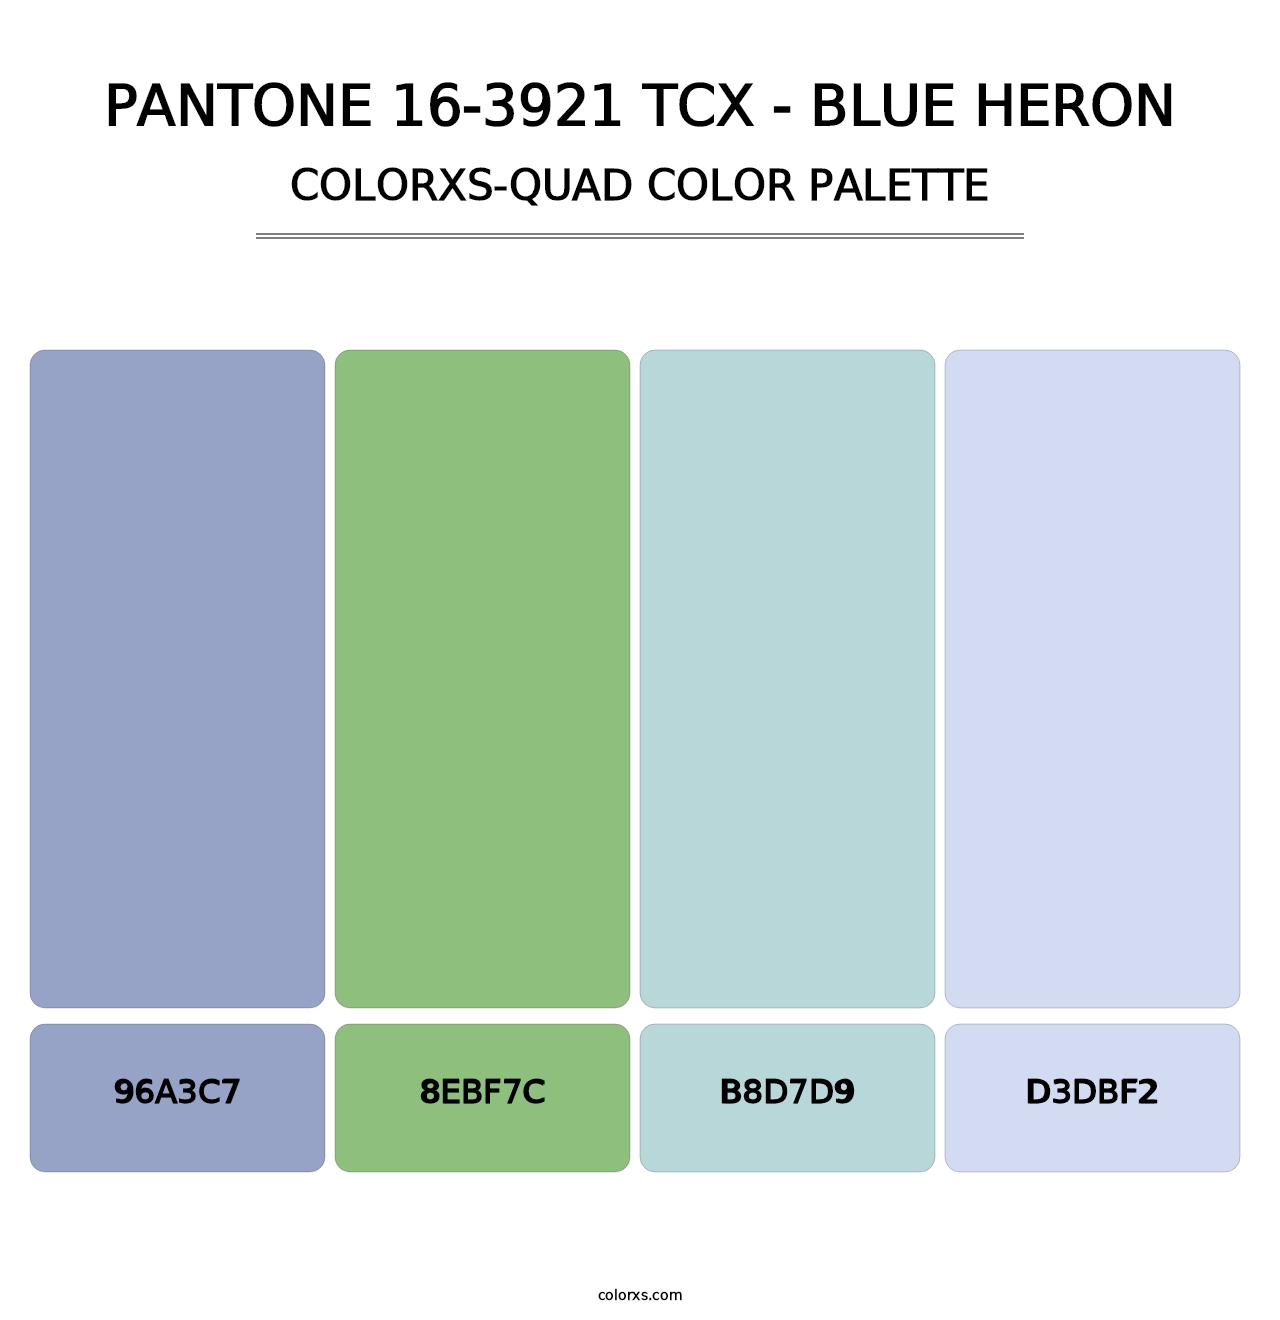 PANTONE 16-3921 TCX - Blue Heron - Colorxs Quad Palette